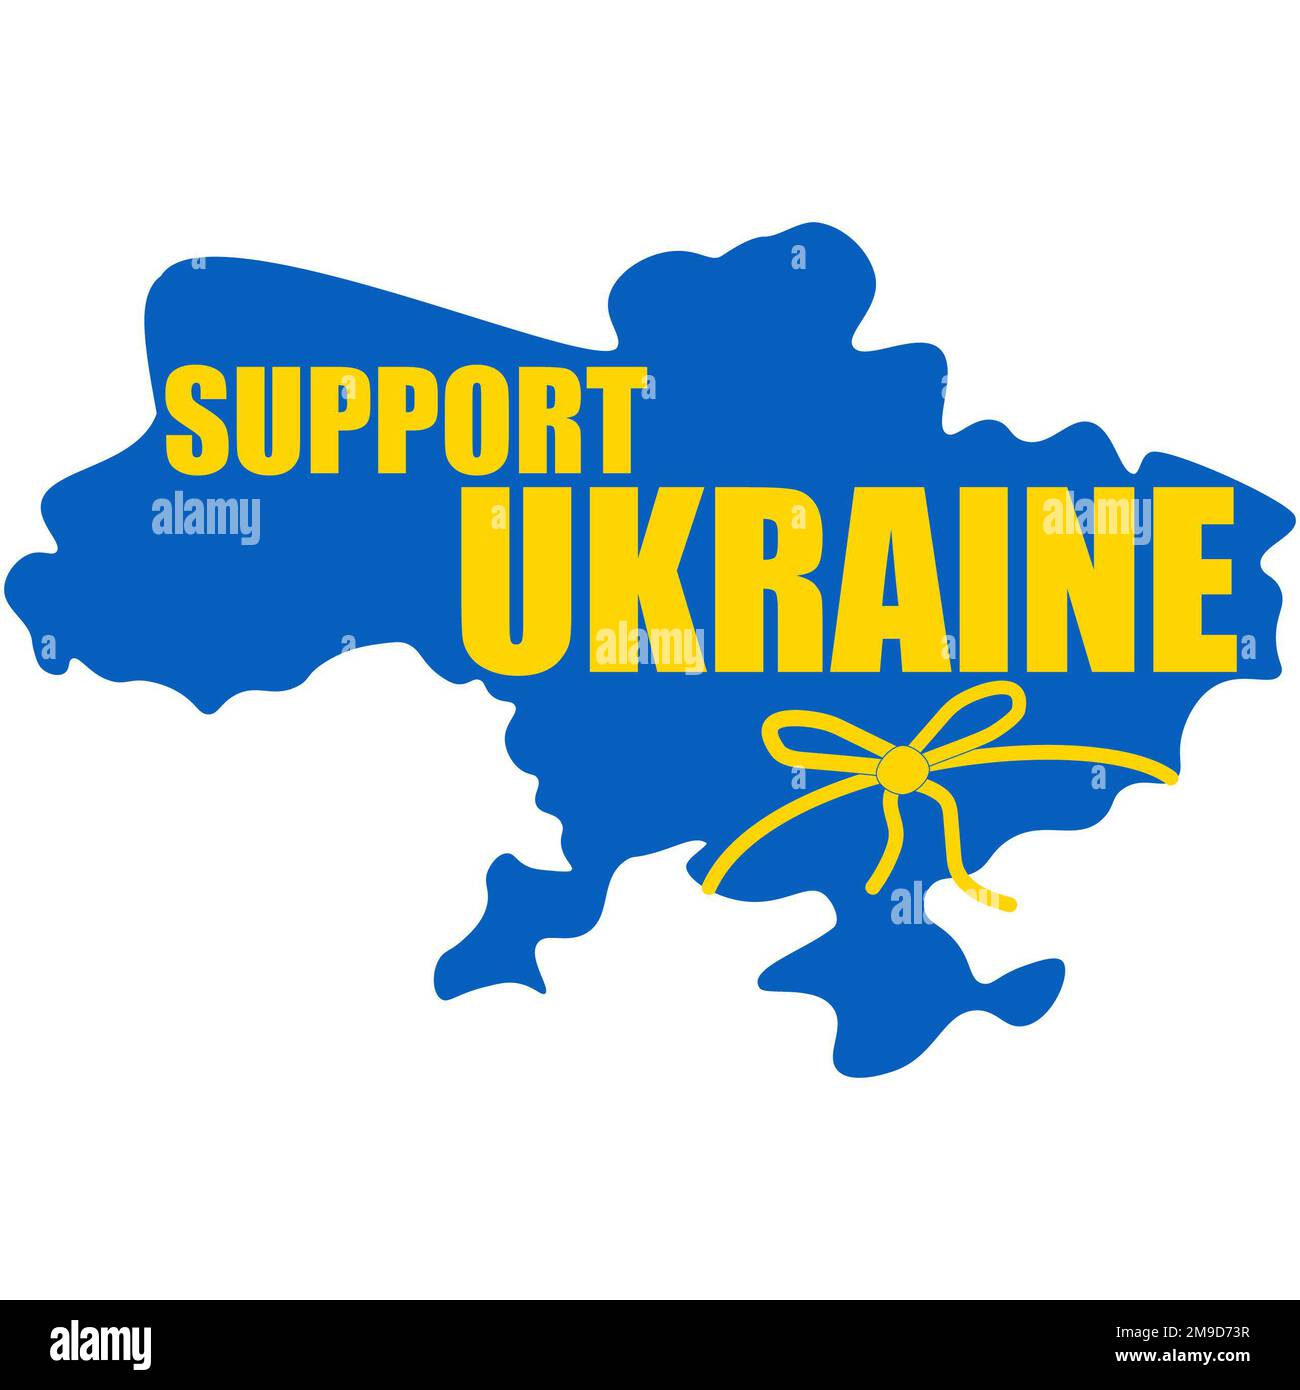 Ucraina mappa con il testo SUPPORTO UCRAINA, Ucraina mappa illustrazione, perfetto segno e tag per sostenere la campagna Ucraina Foto Stock